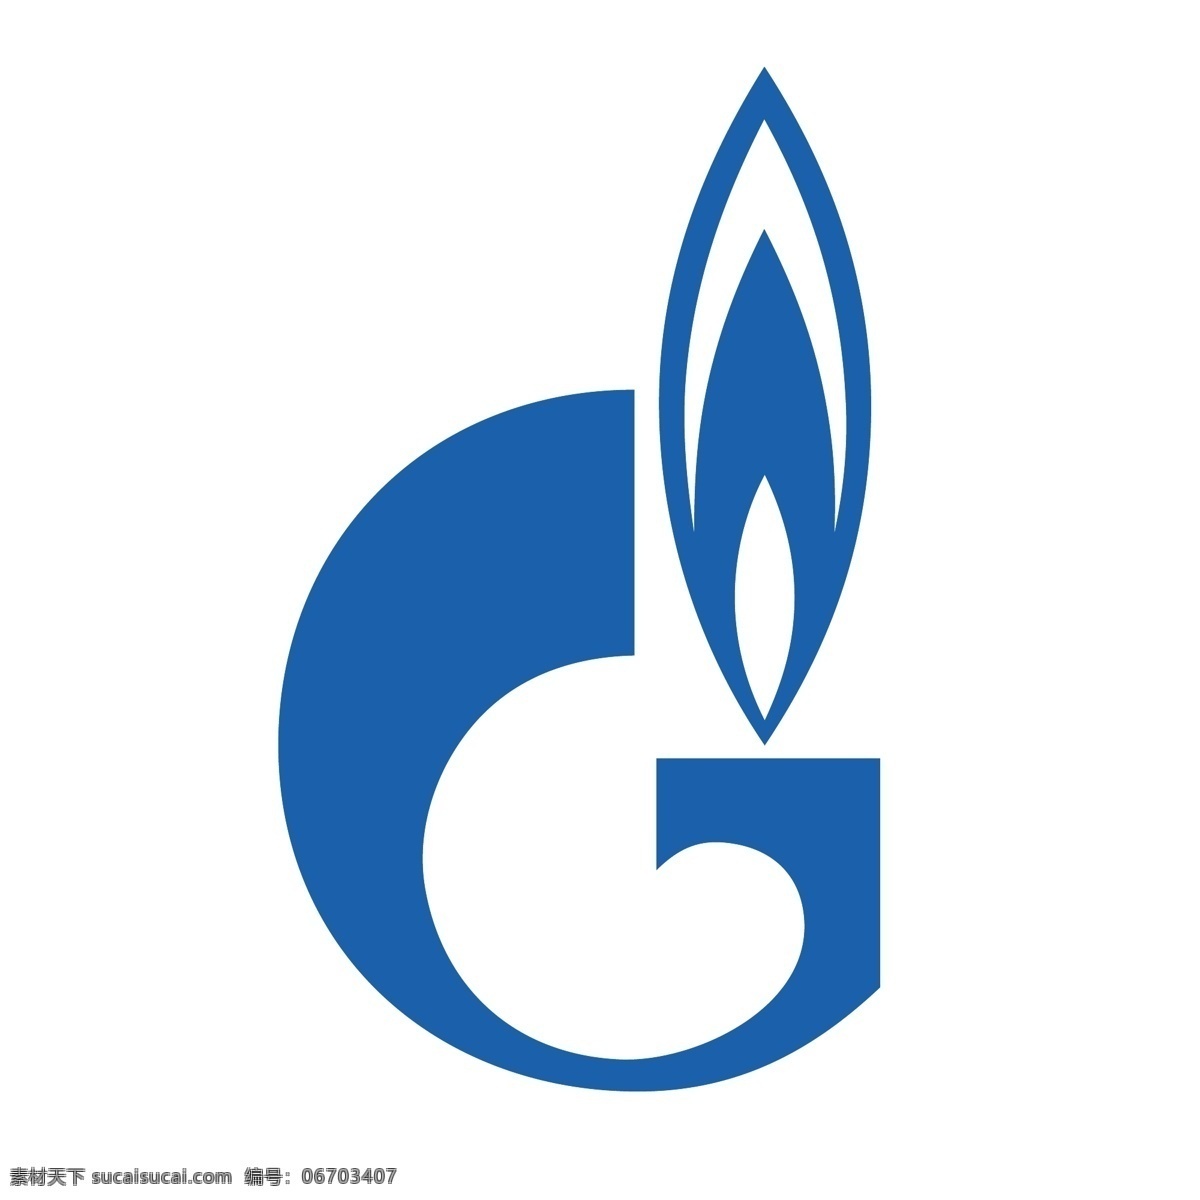 俄罗斯 天然气 工业 股份公司 99 标识 公司 免费 品牌 品牌标识 商标 矢量标志下载 免费矢量标识 矢量 psd源文件 logo设计